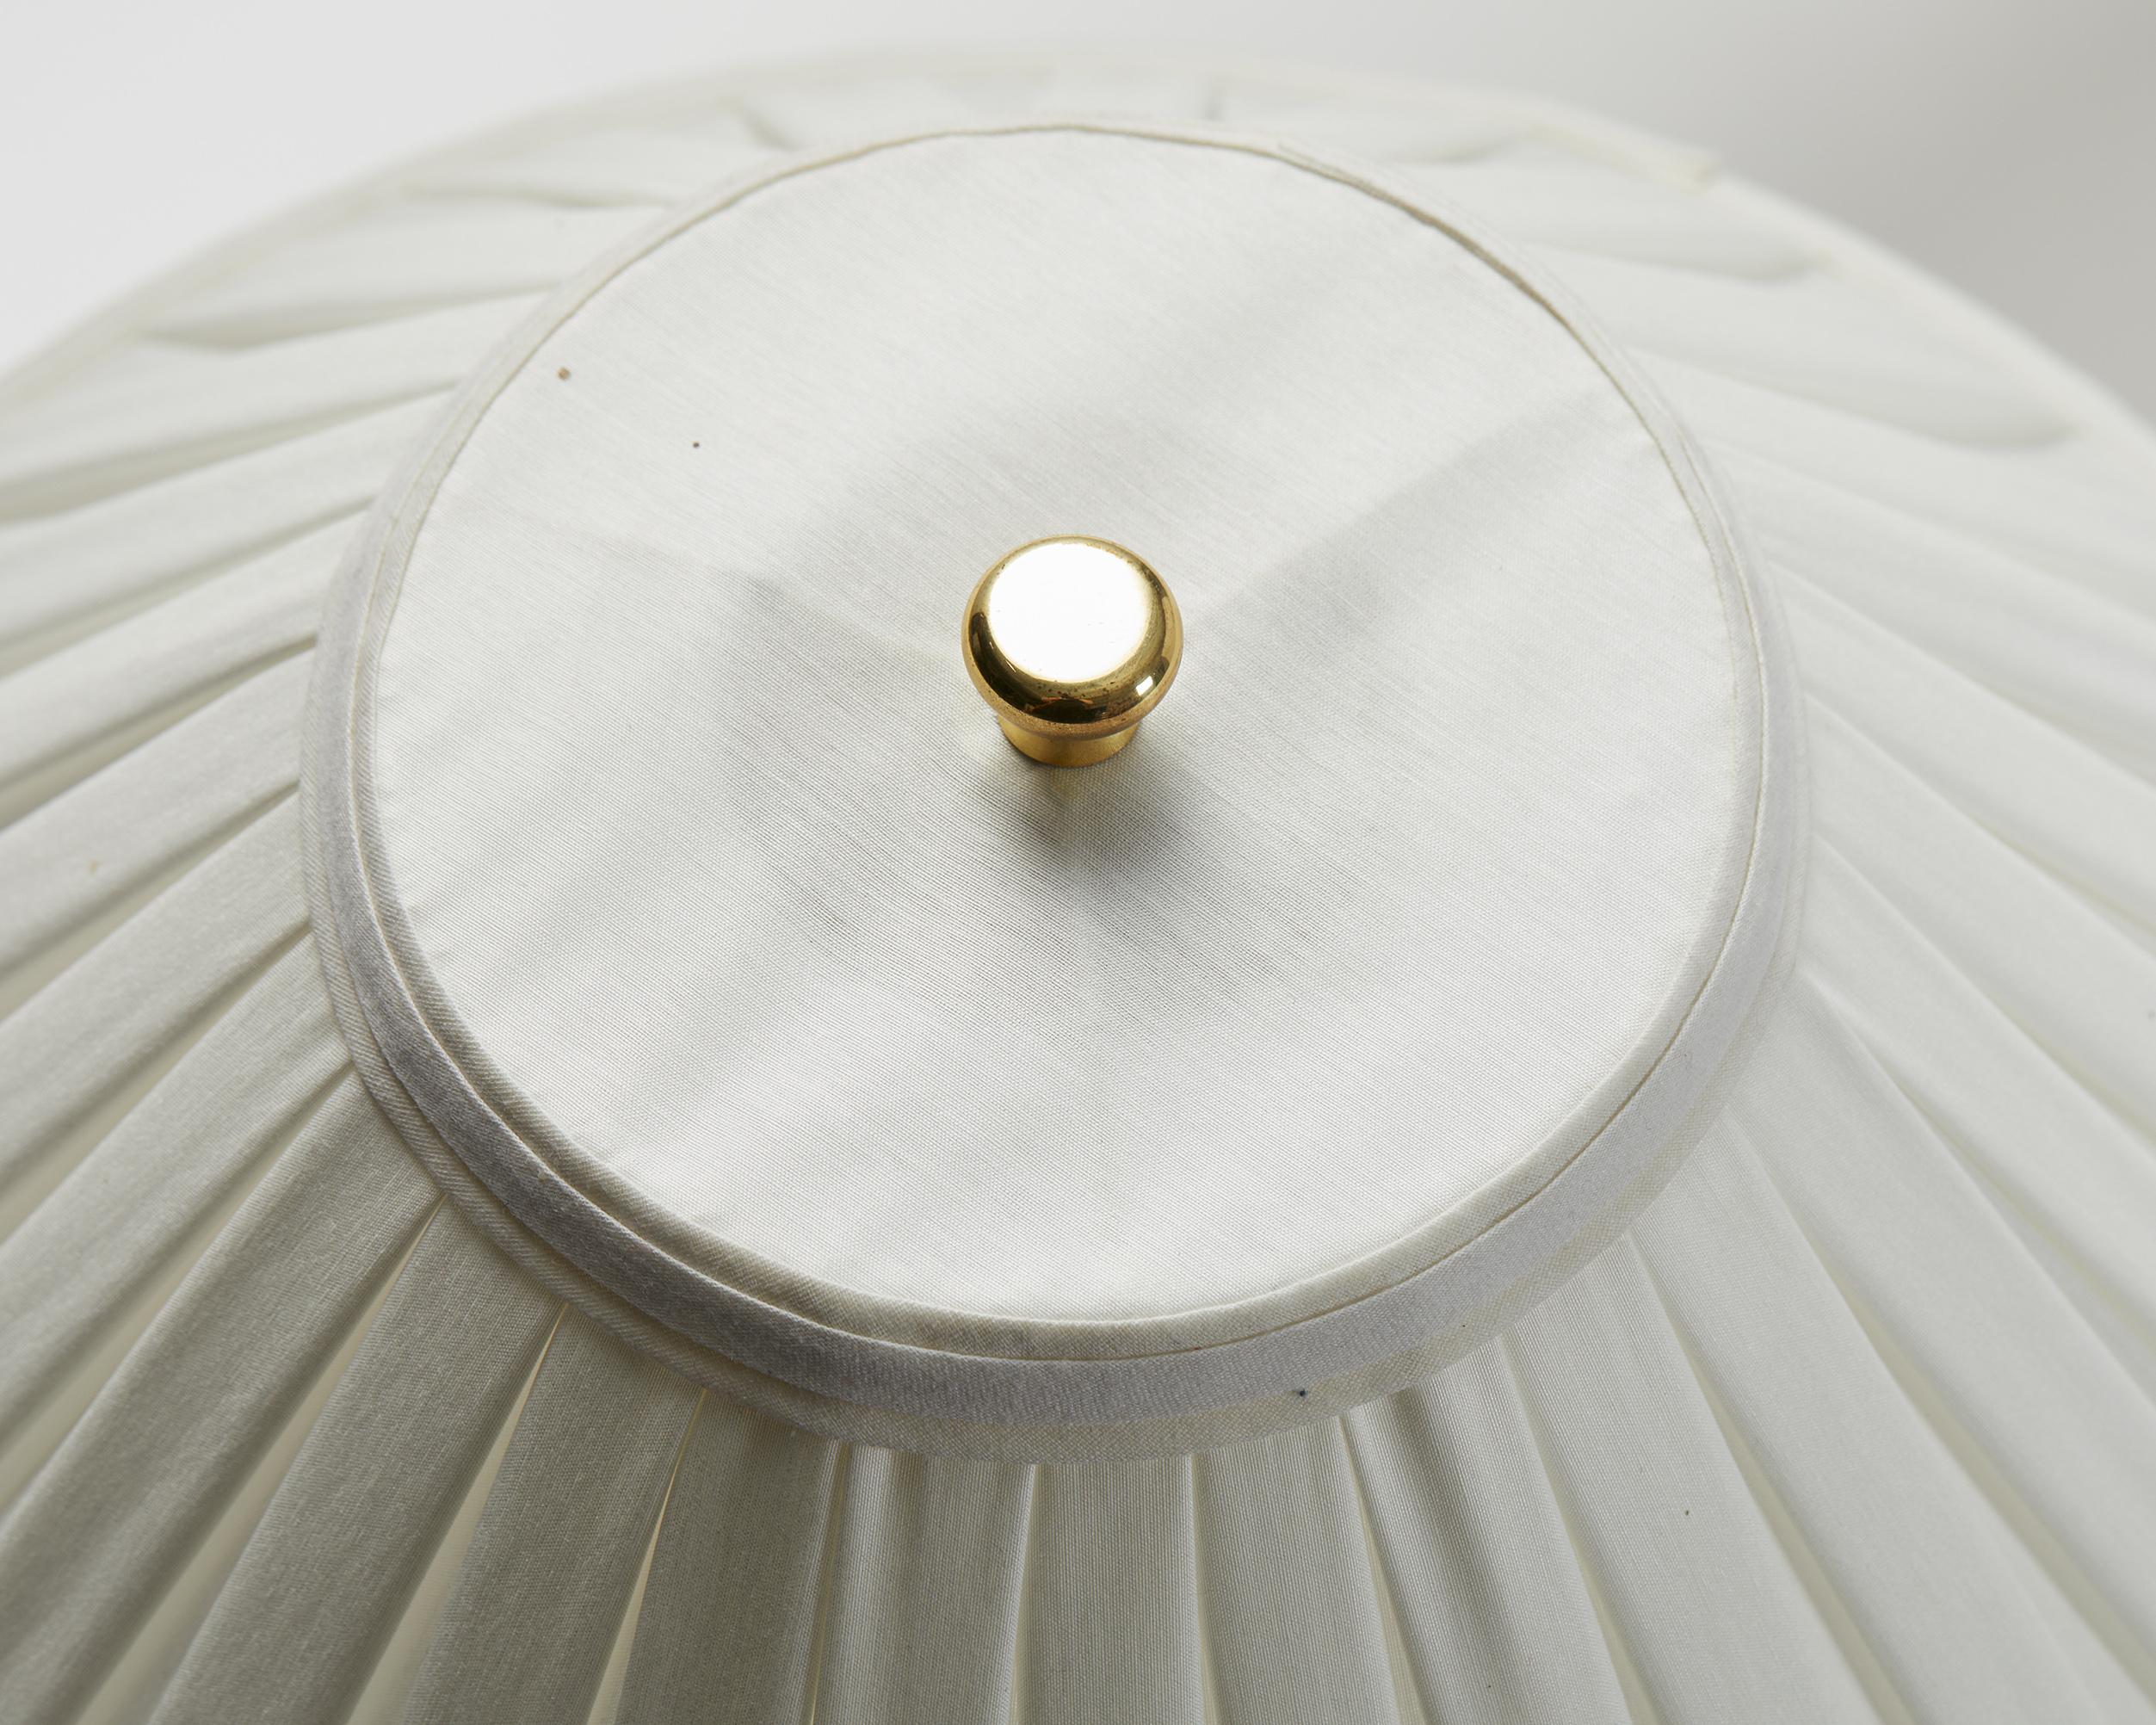 Brass Table Lamp Model 2467 Designed by Josef Frank for Svenskt Tenn, Sweden, 1950s